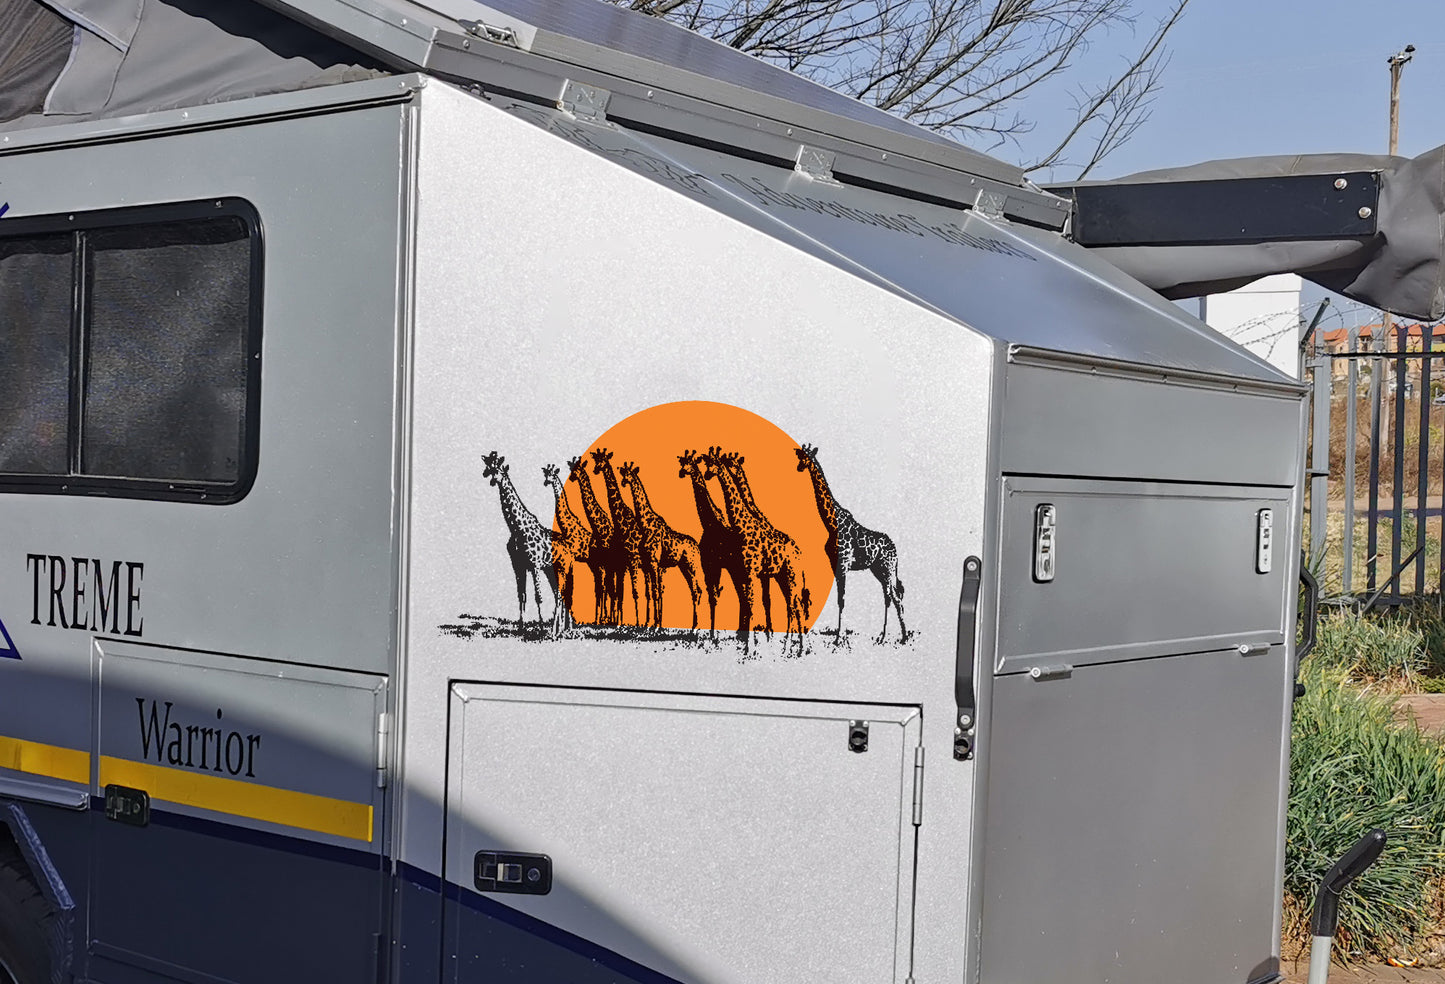 Sunset Giraffes Kameelperde Vehicle Wall Vinyl Decal Sticker Art